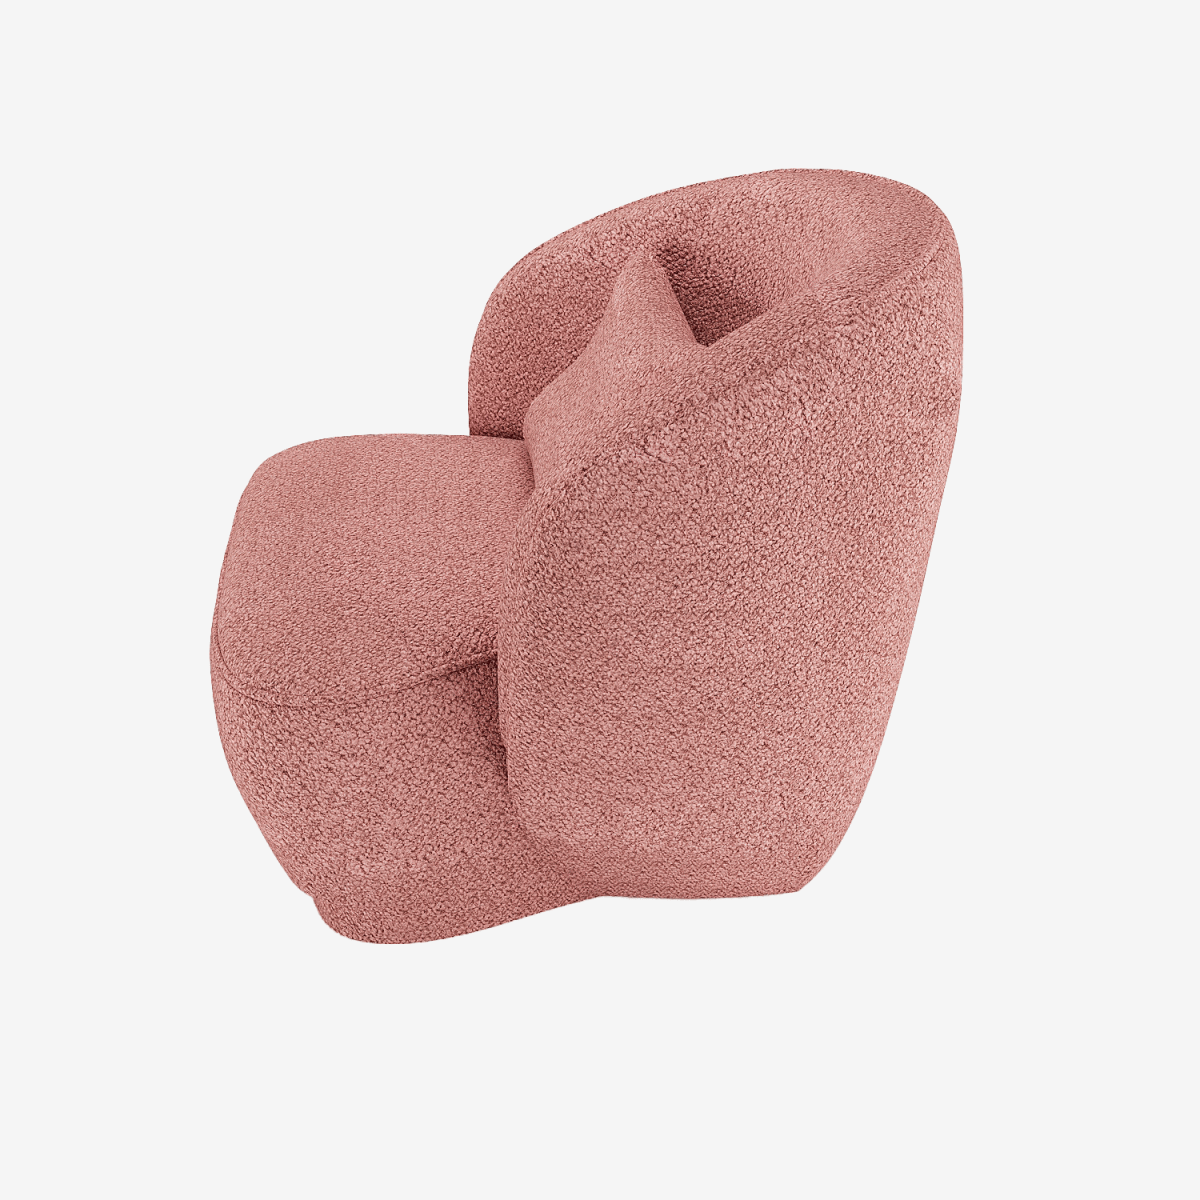 Une déco qui change : Fauteuil design bouclé rose Pablo - Potiron Paris, petit meuble contemporain salon